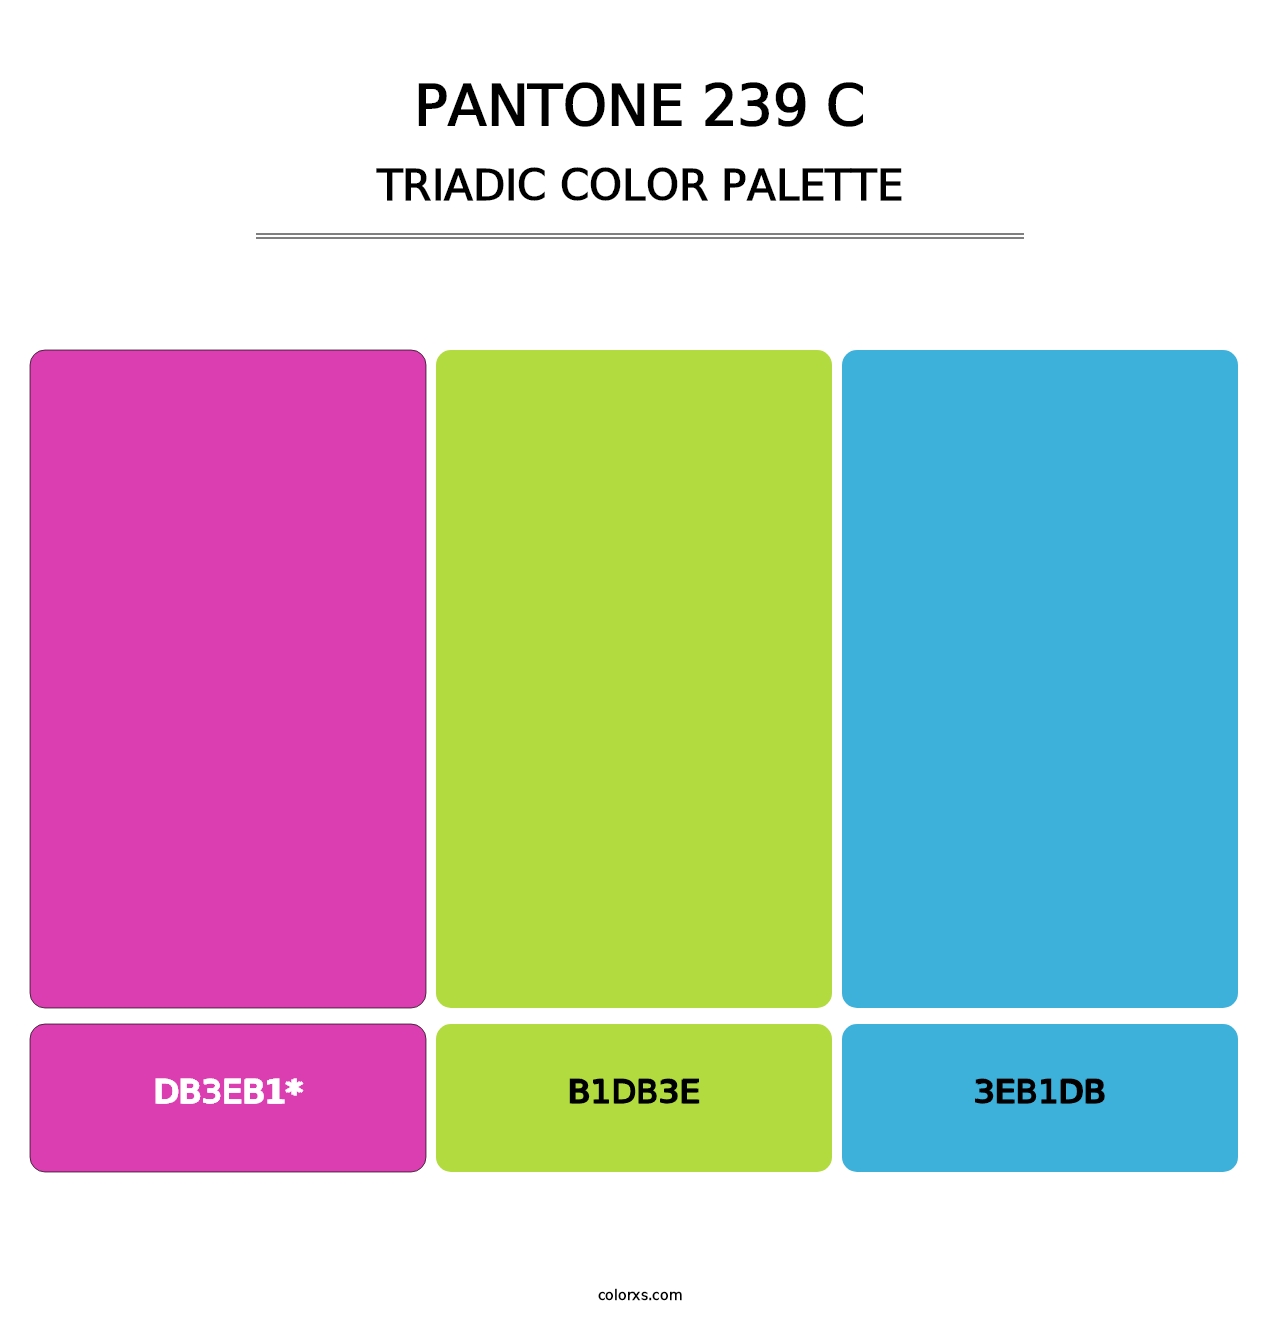 PANTONE 239 C - Triadic Color Palette